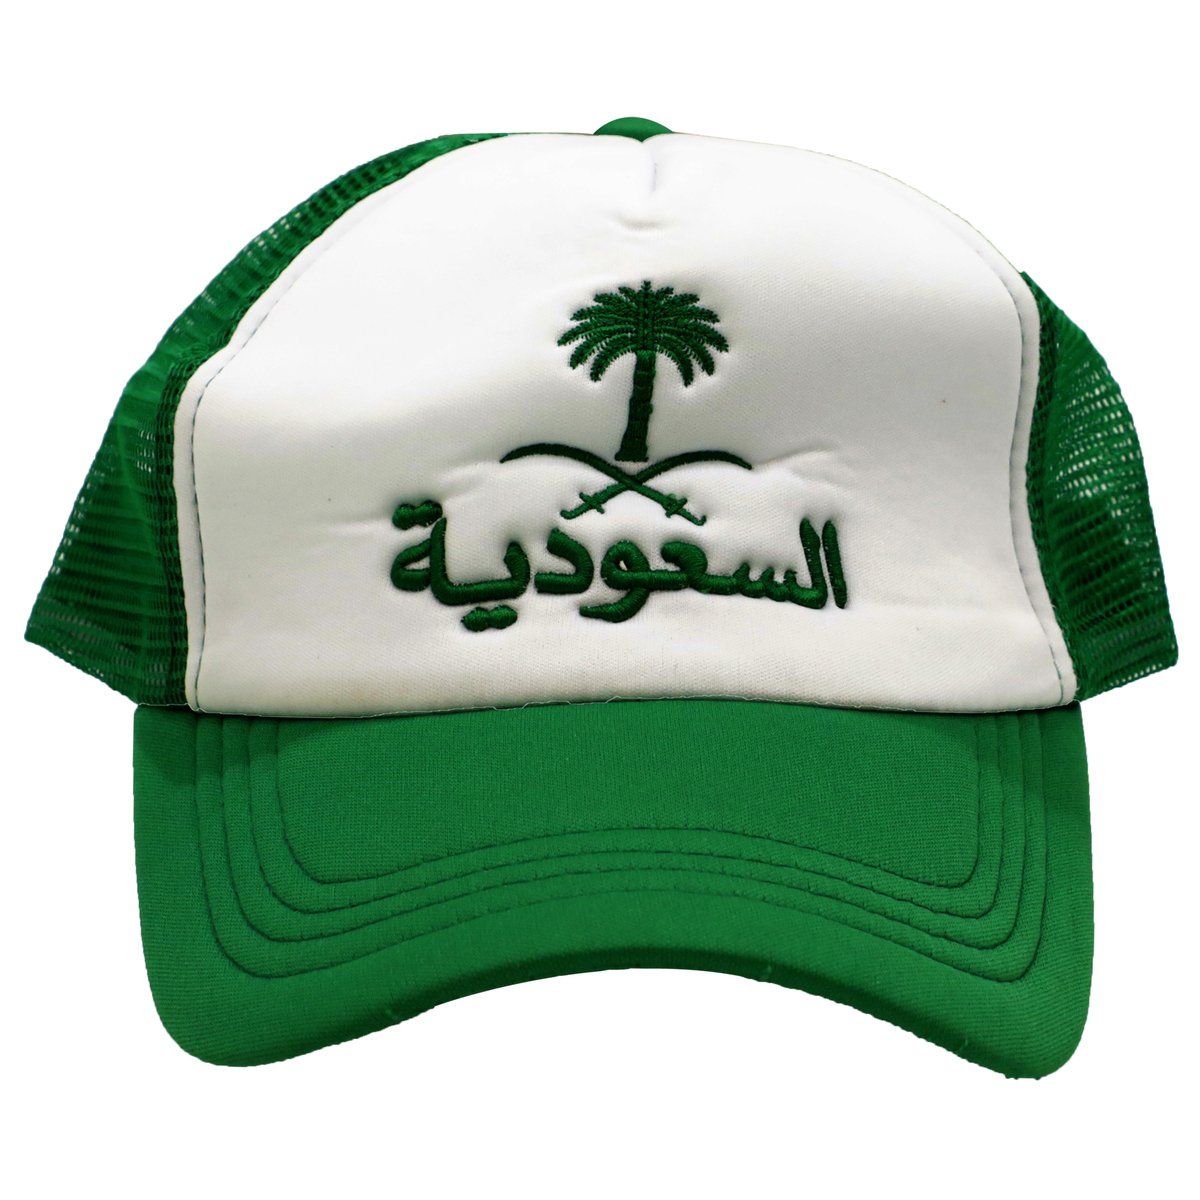 قبعة بيسبول المملكة العربية السعودية